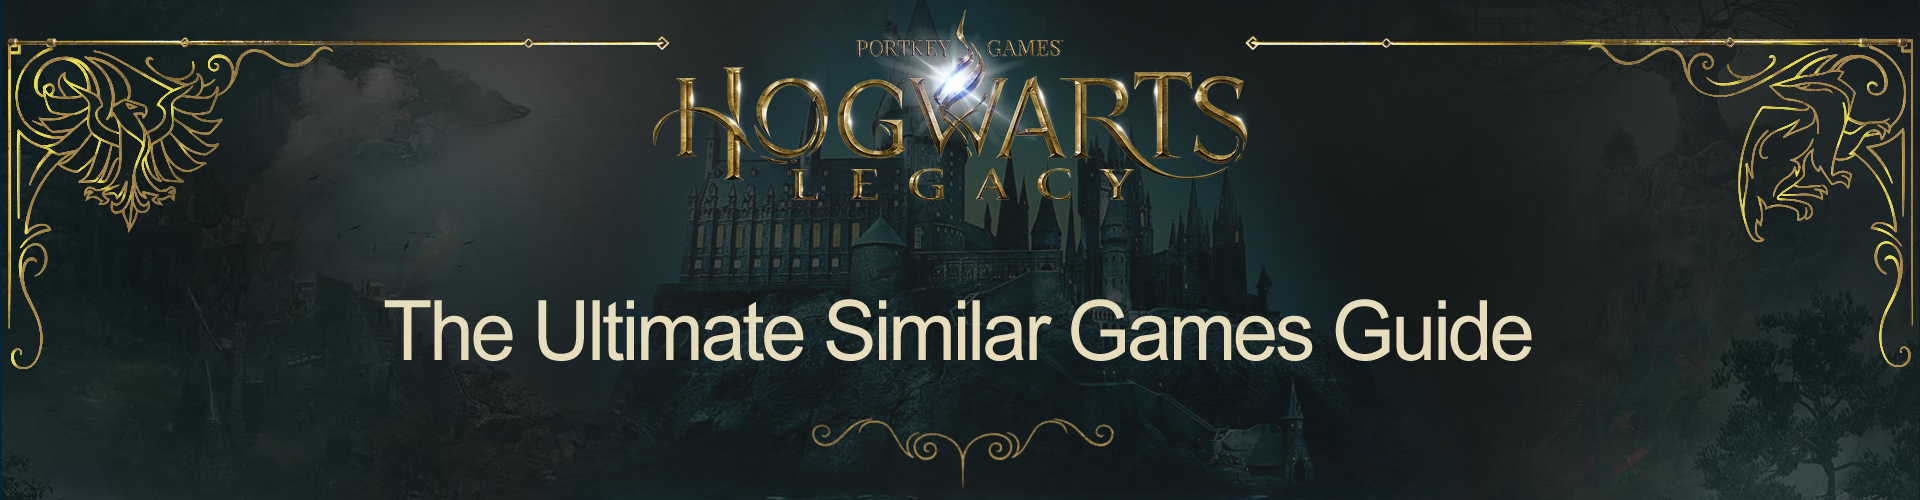 Juegos Como Hogwarts Legacy